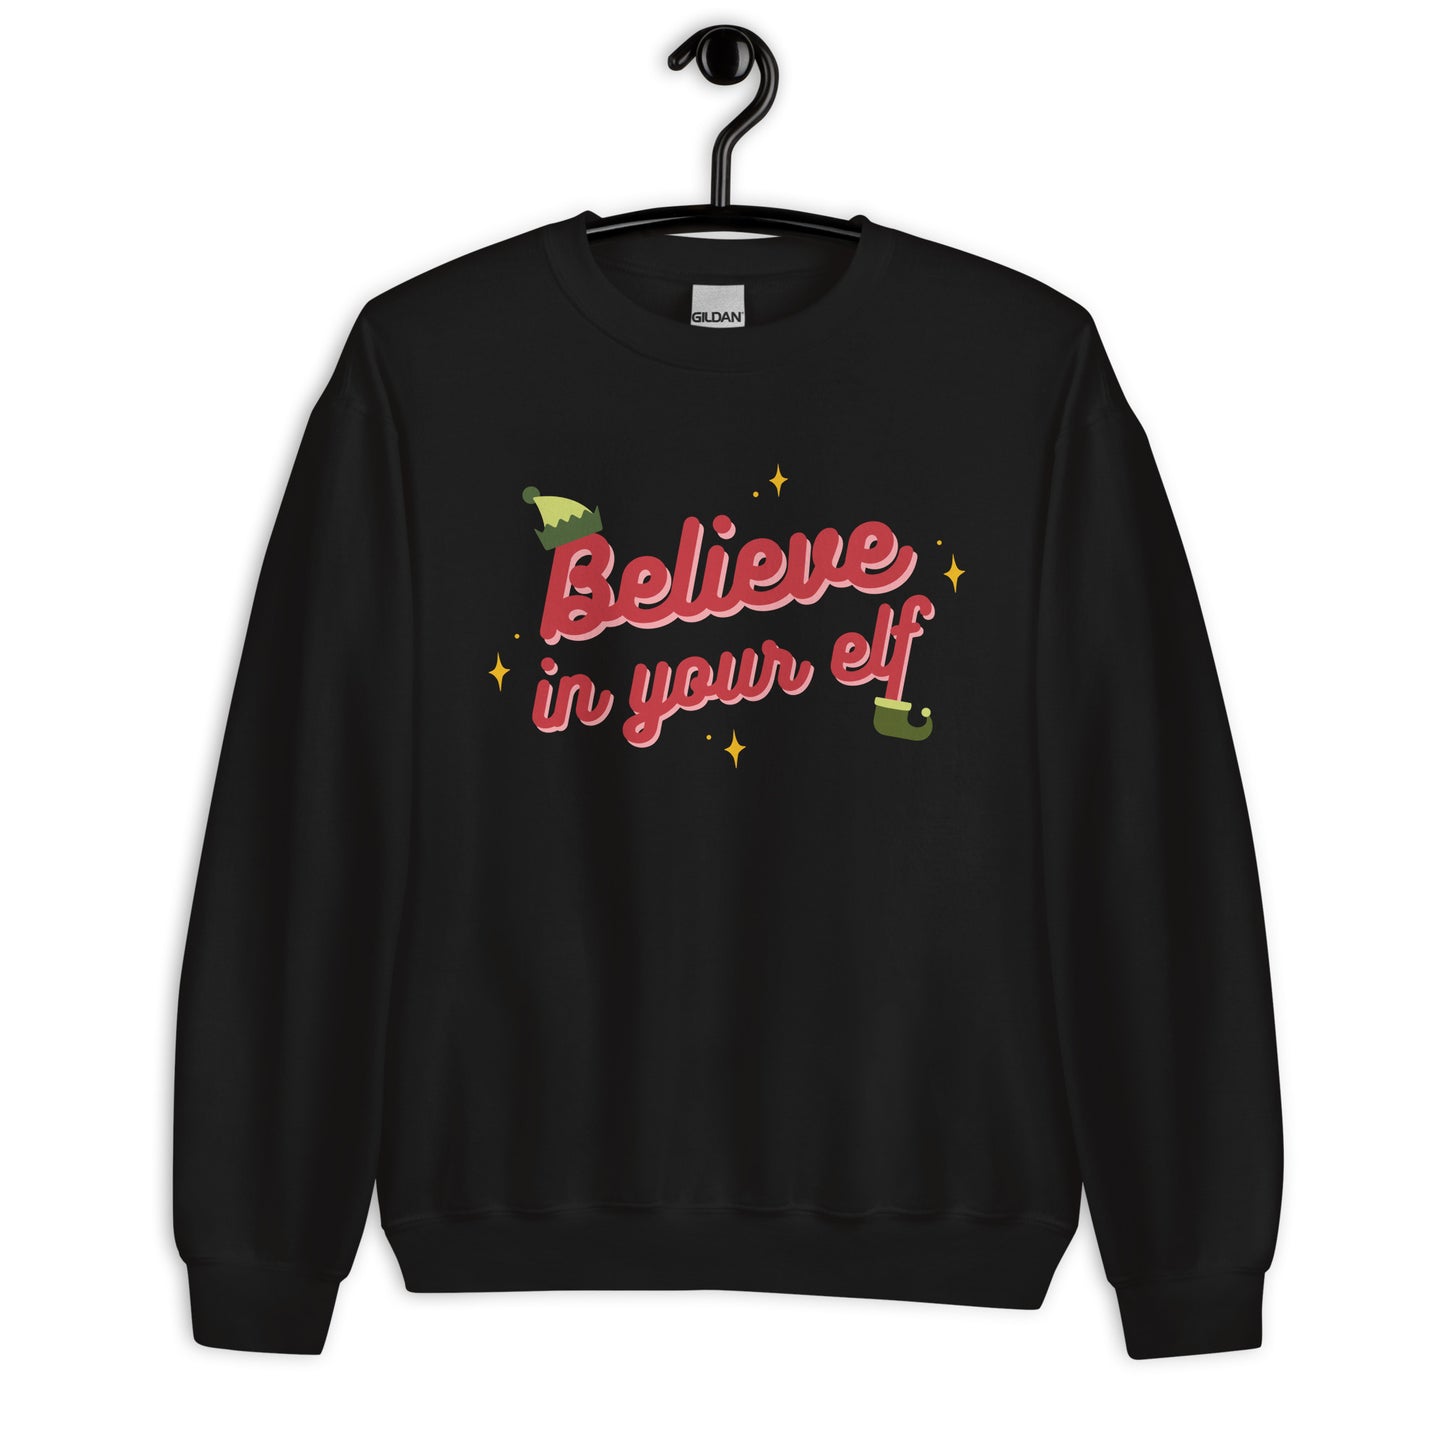 Believe in your Elf — Adult Unisex Crewneck Sweatshirt